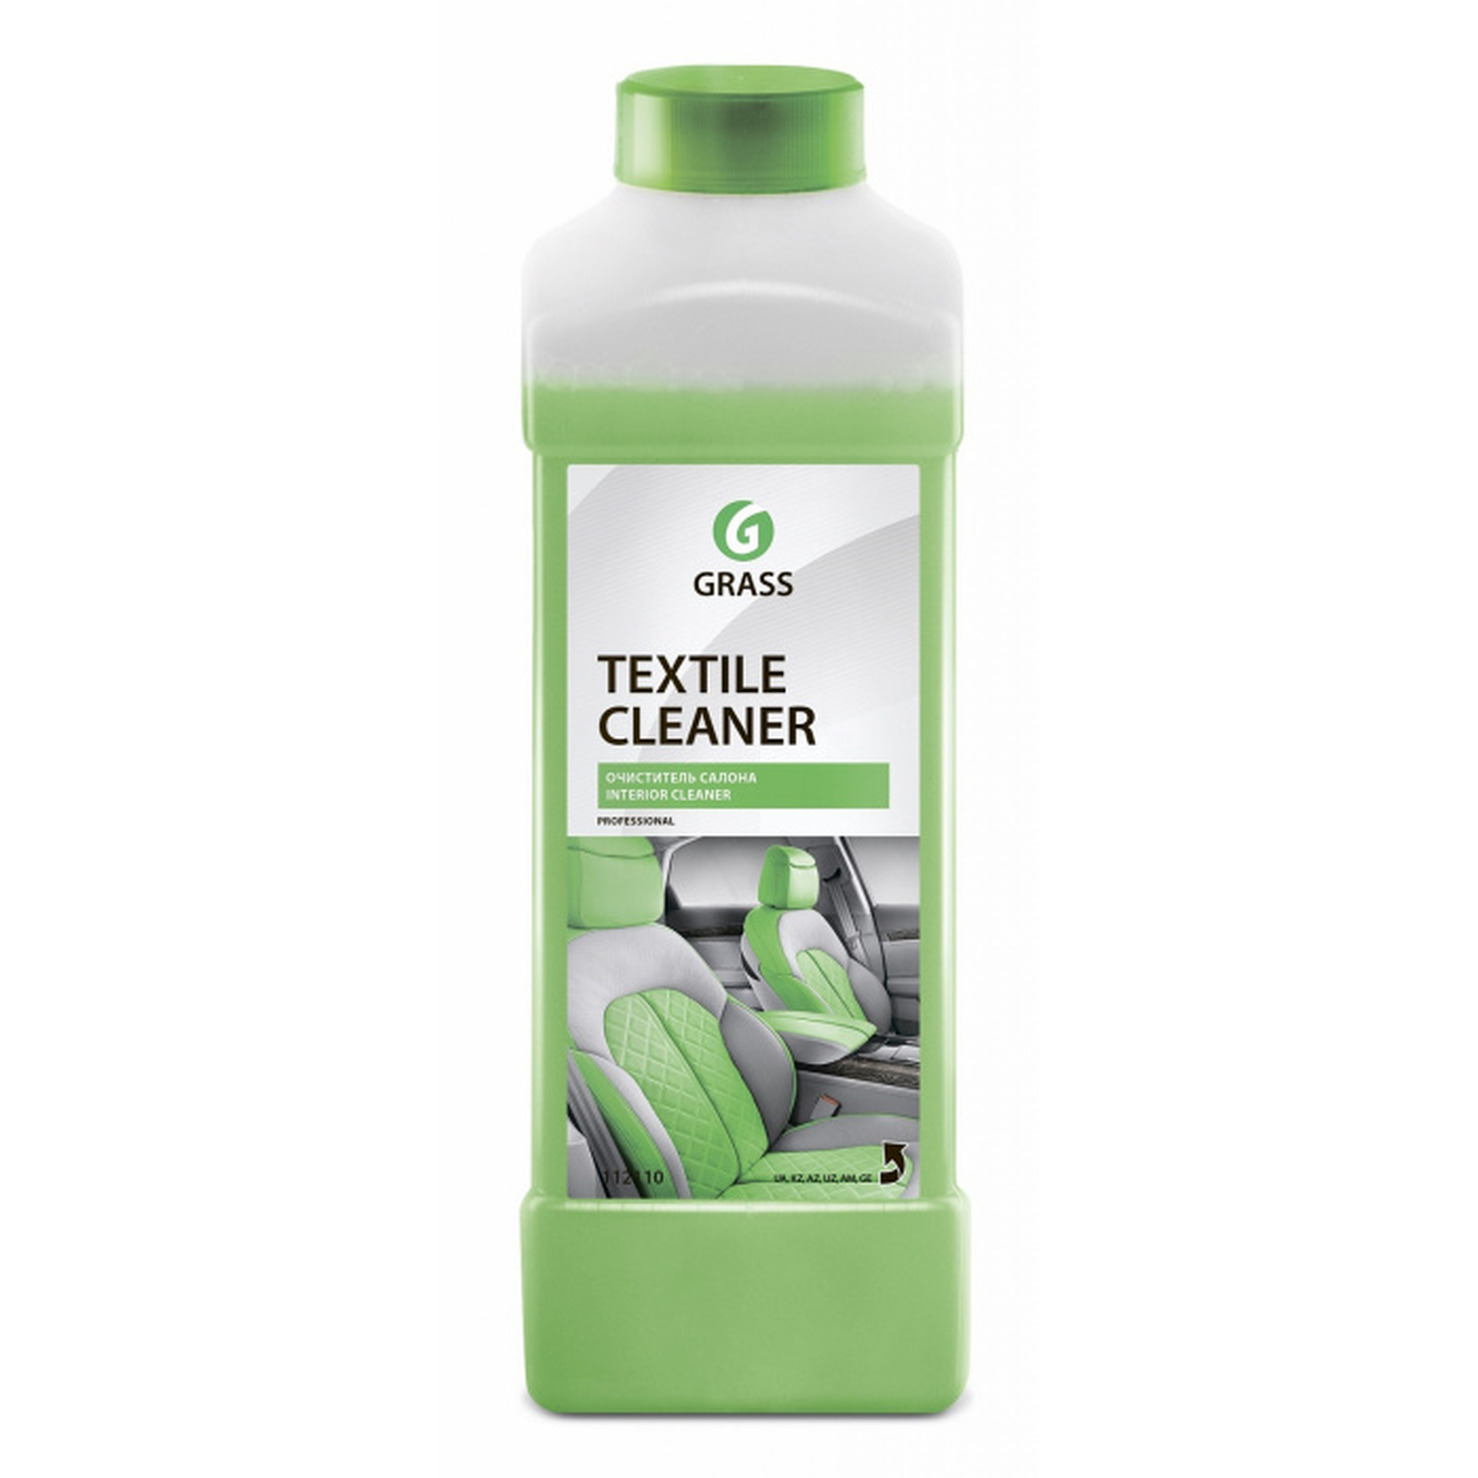 Очиститель салона Grass Textyle Cleaner концентрат 1кг 112110 очиститель салона grass universal cleaner флакон 0 6кг 110392